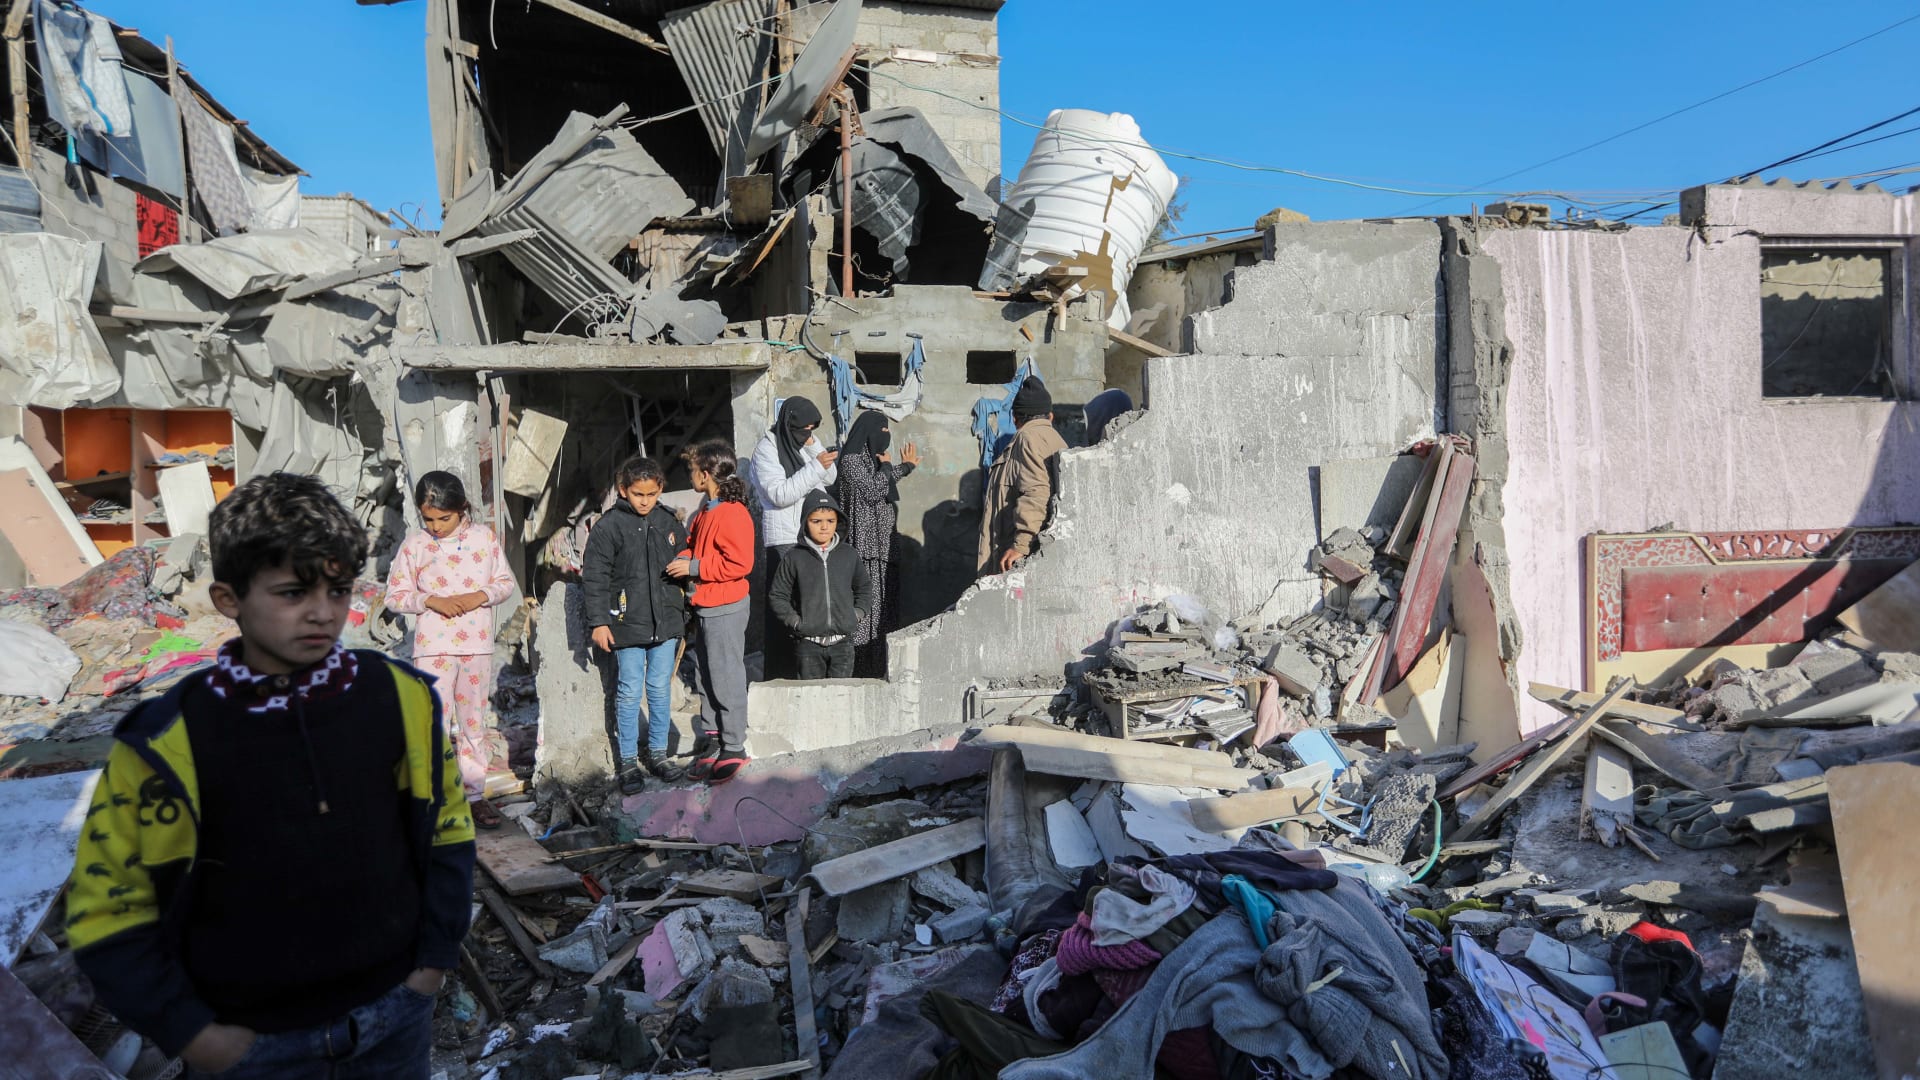 استخدام "الإنجيل" والذكاء الاصطناعي وإمضاء 20 ثانية لتخويل الضربات.. صحفي إسرائيلي يكشف حقائق صادمة عن الحرب في غزة